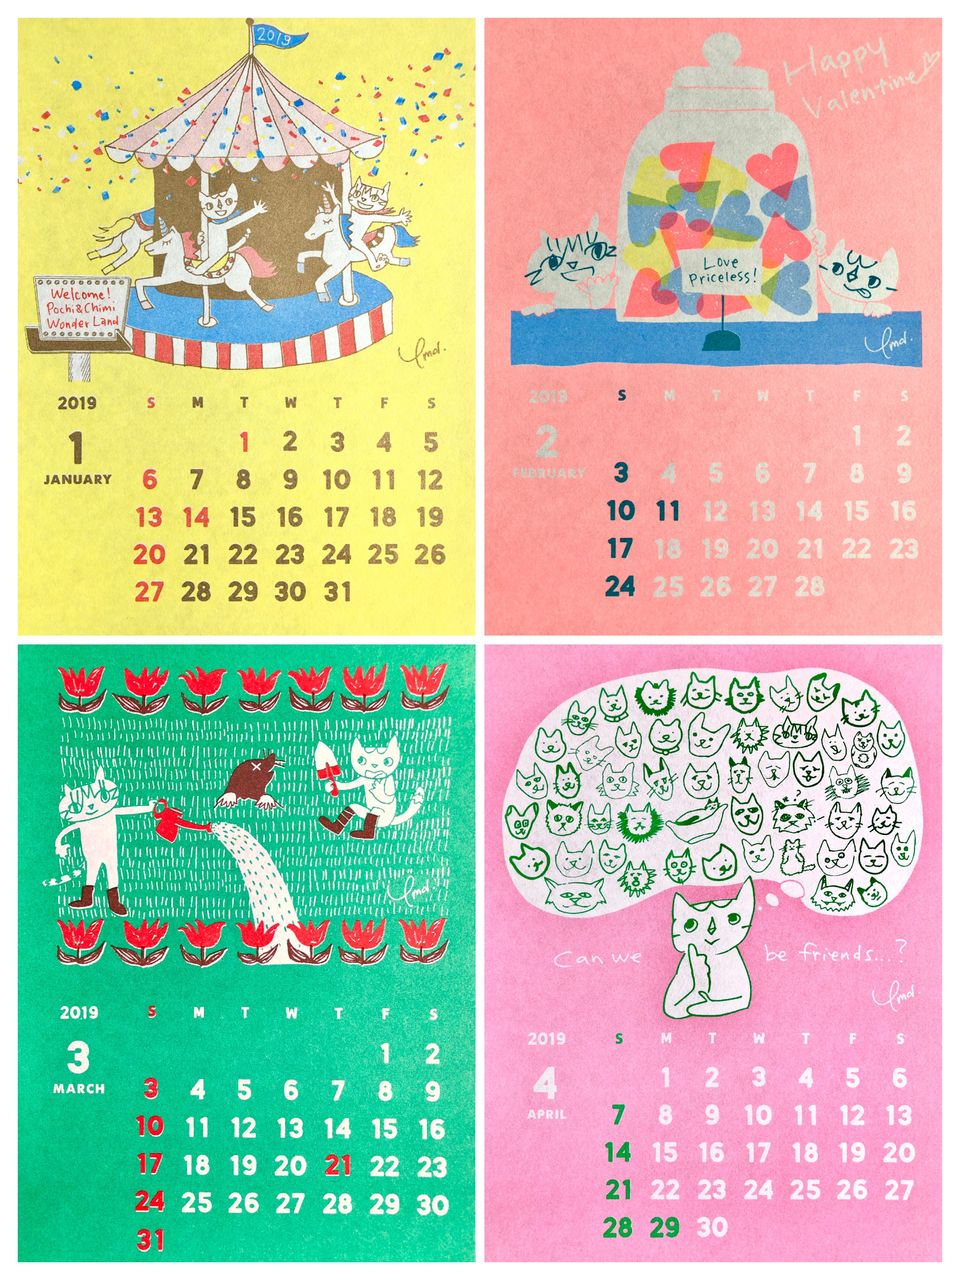 山田稔明イラストによる19年カレンダーの通販storeでの販売を開始します Monoblog